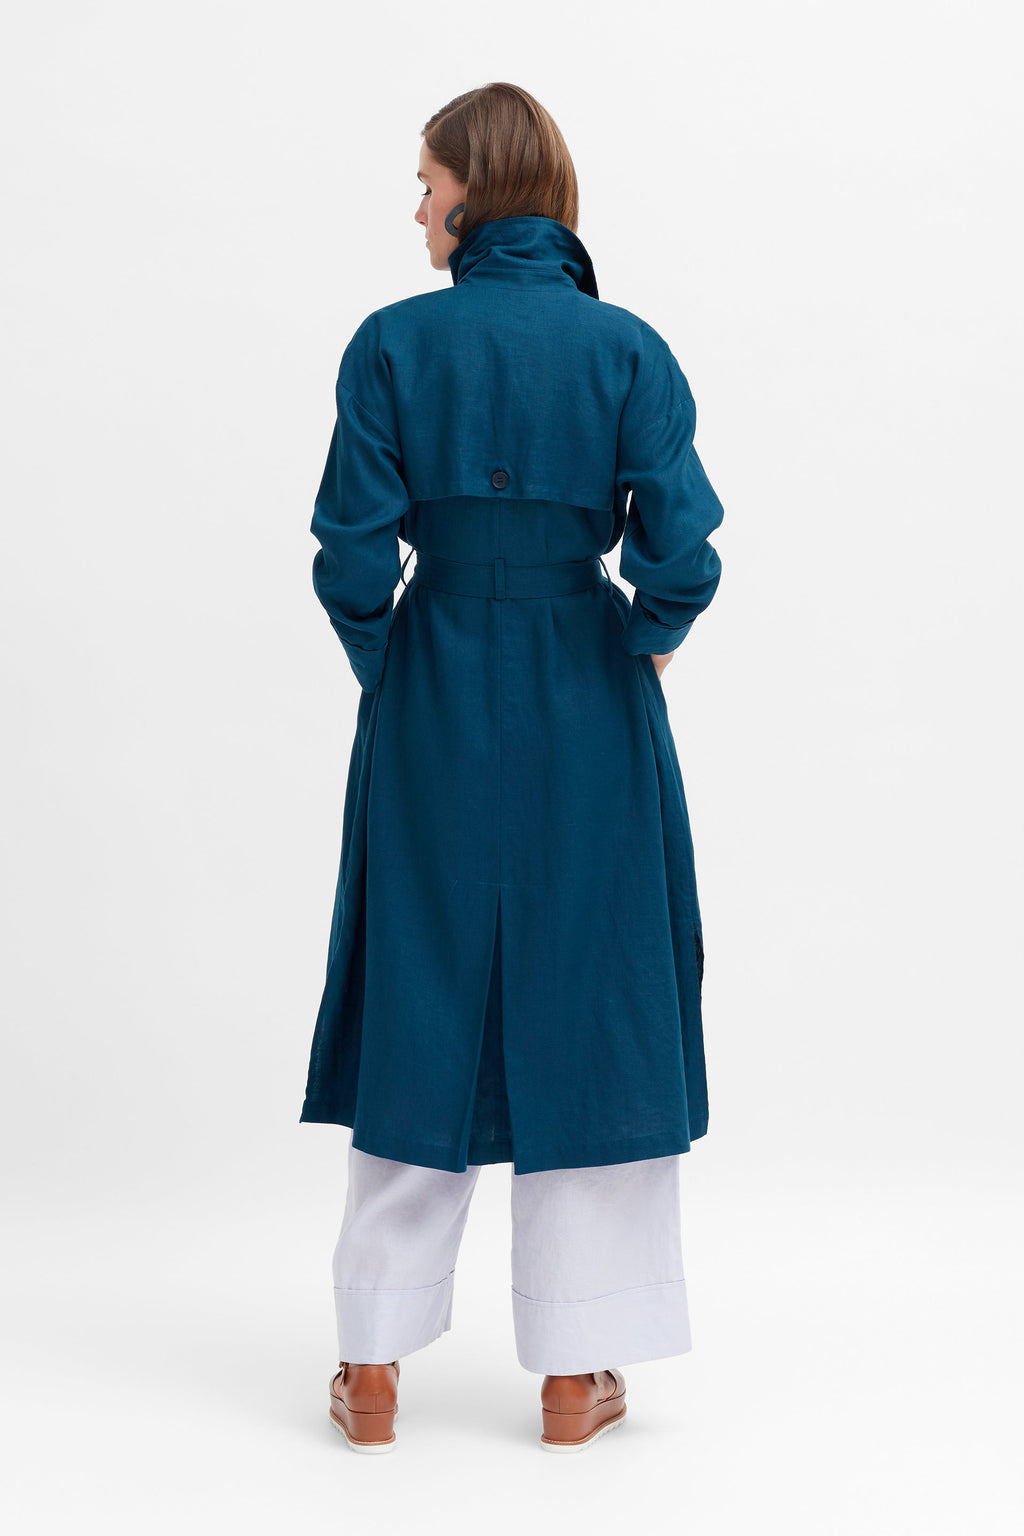 ELK the Label Anneli Linen Trench Coat